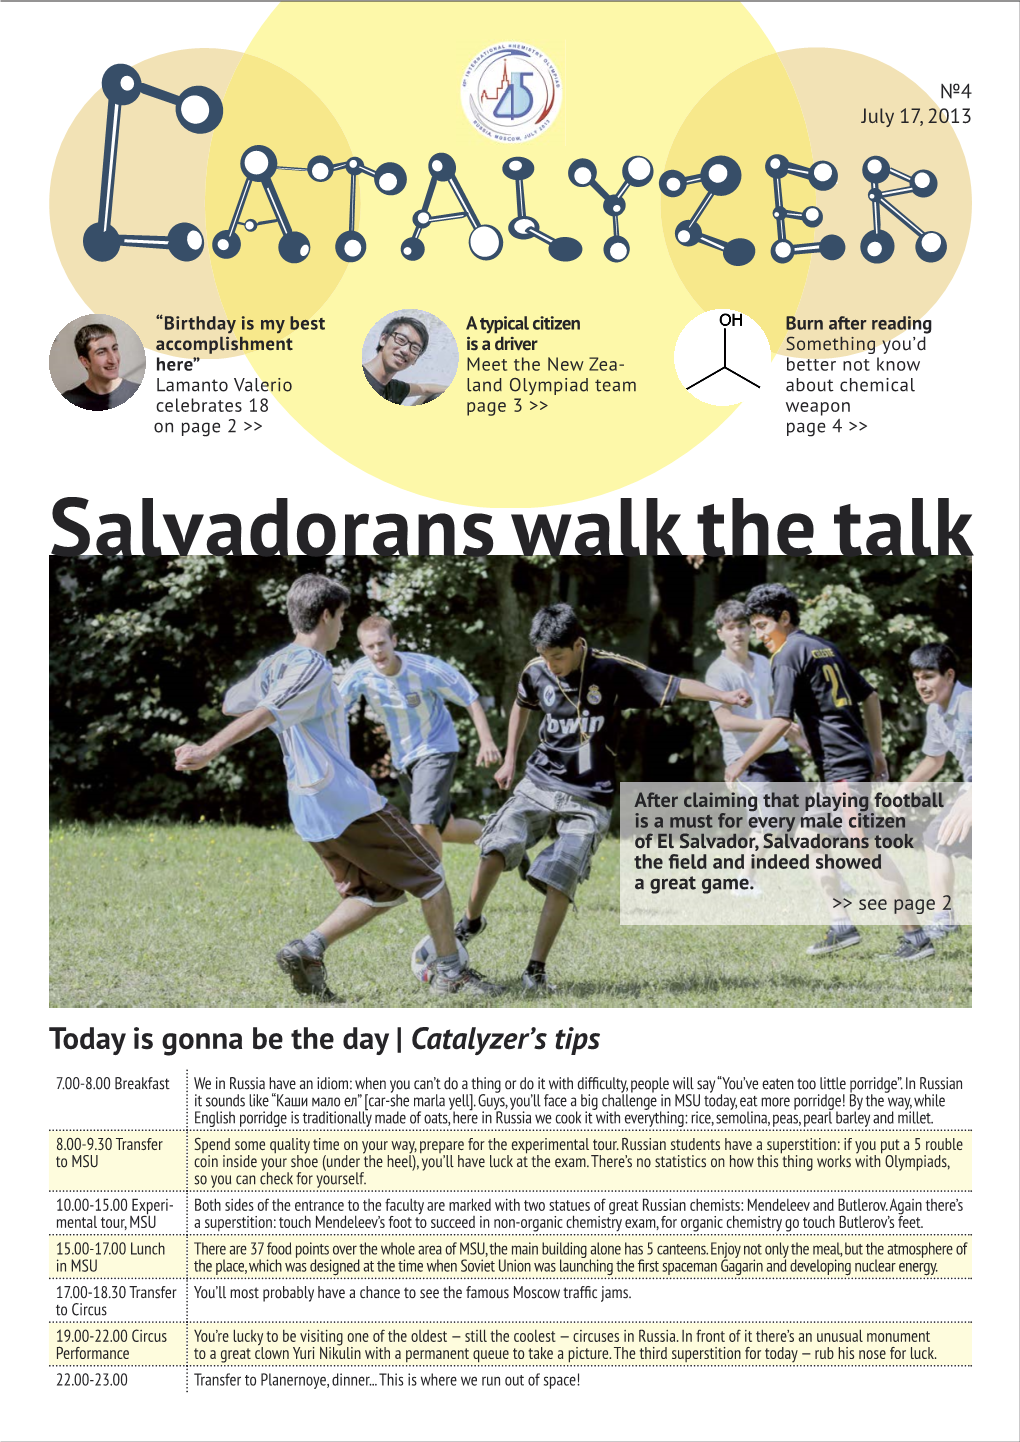 Salvadorans Walk the Talk